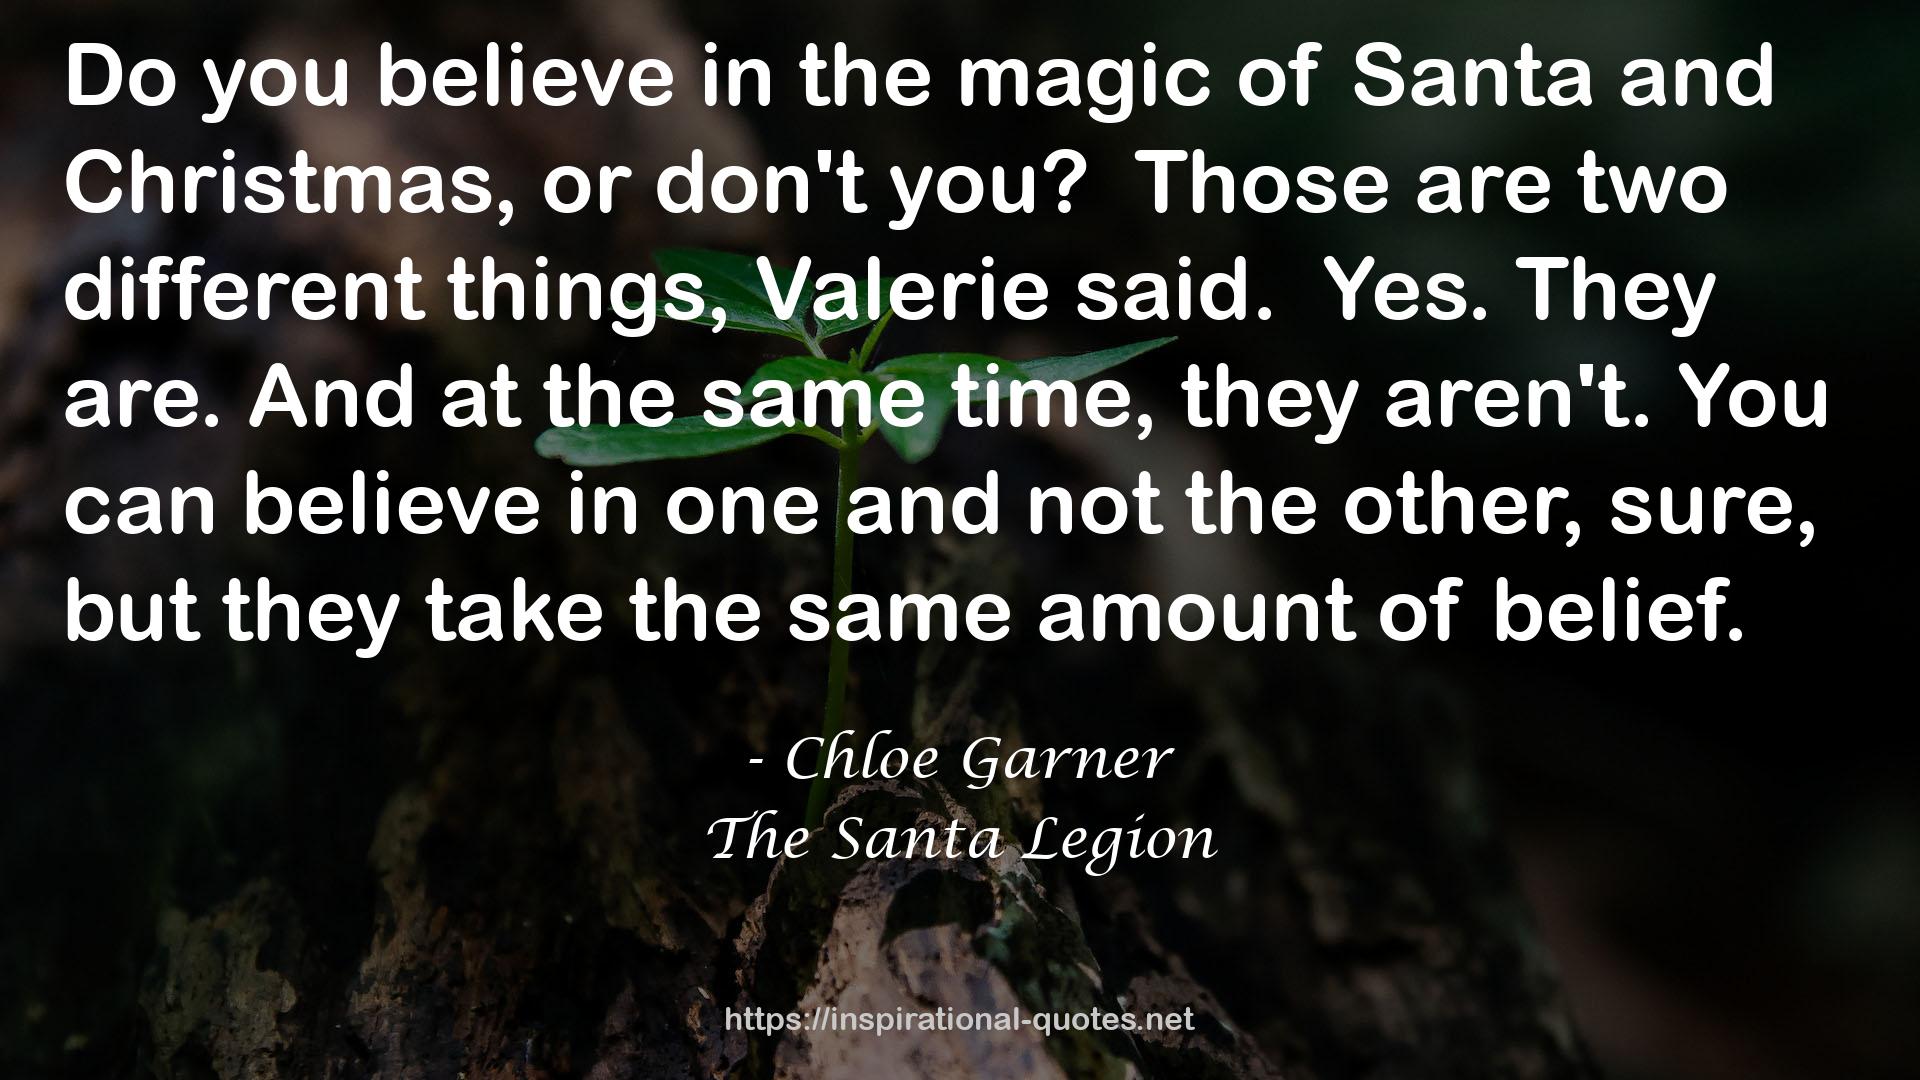 The Santa Legion QUOTES